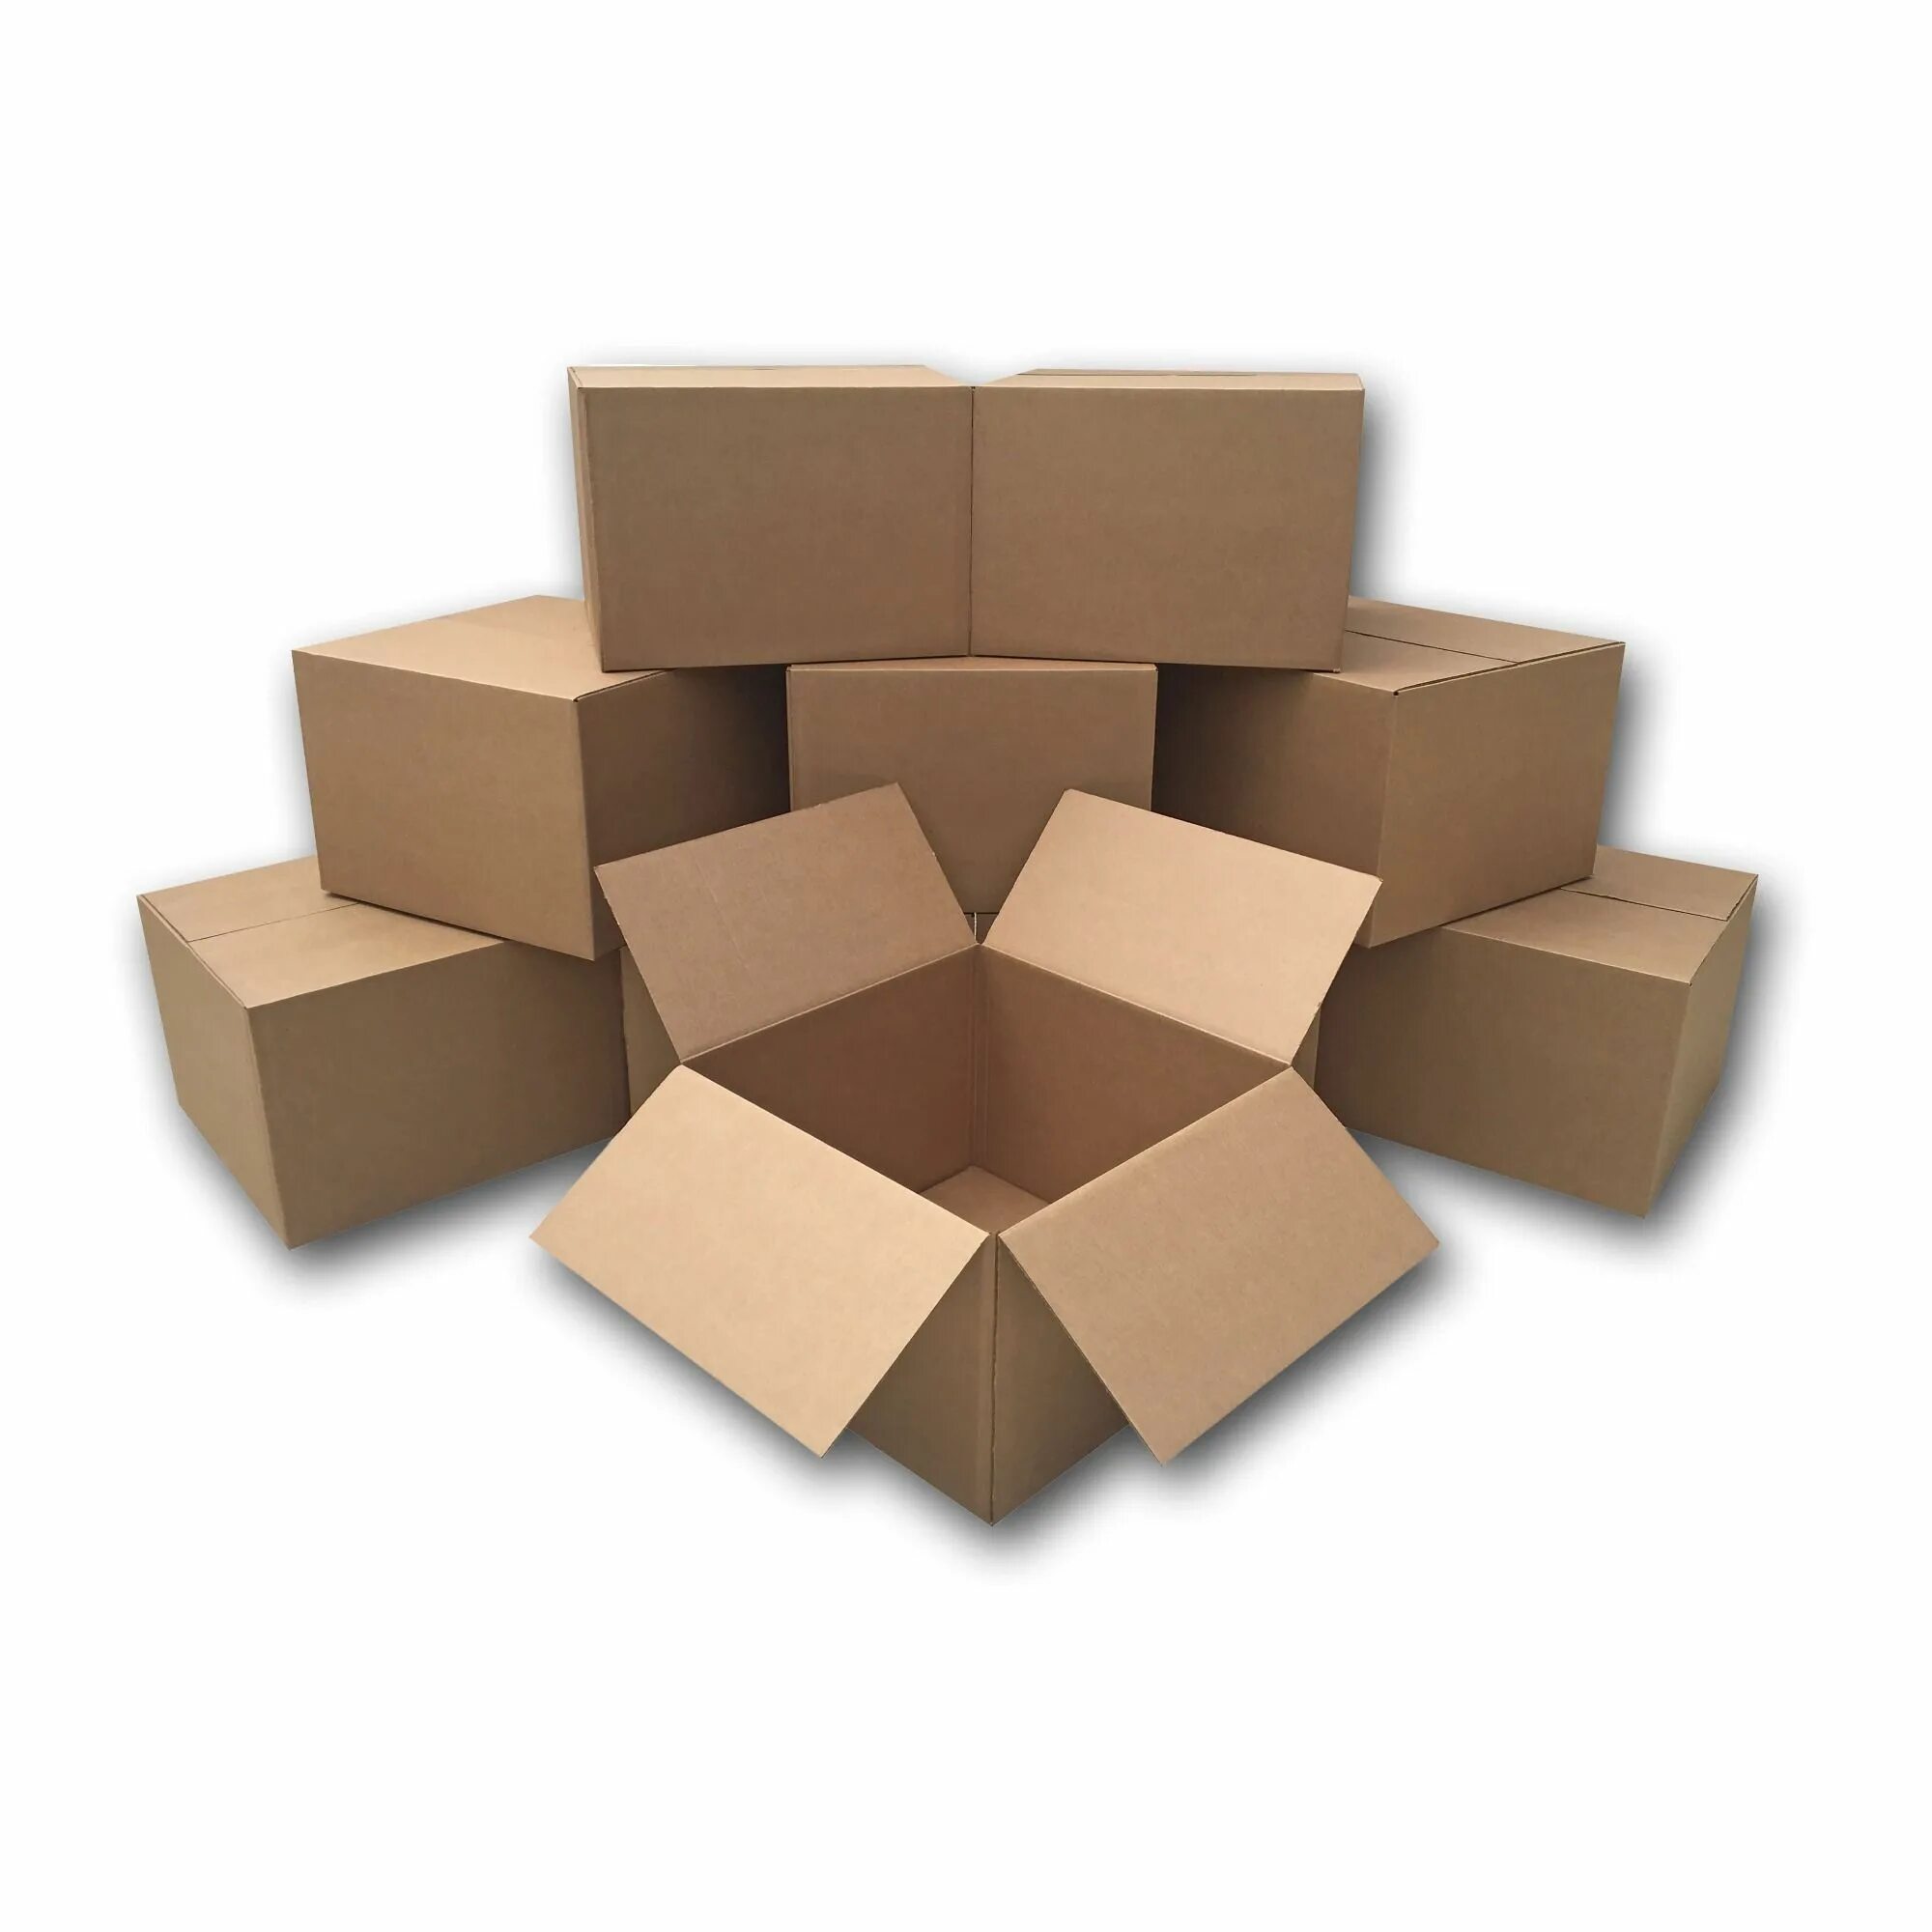 Бумажные коробки. Розовые картонные коробки. Длинная картонная коробка. Картонные коробки для транспортировки цветов. 16 серых коробок на китайском